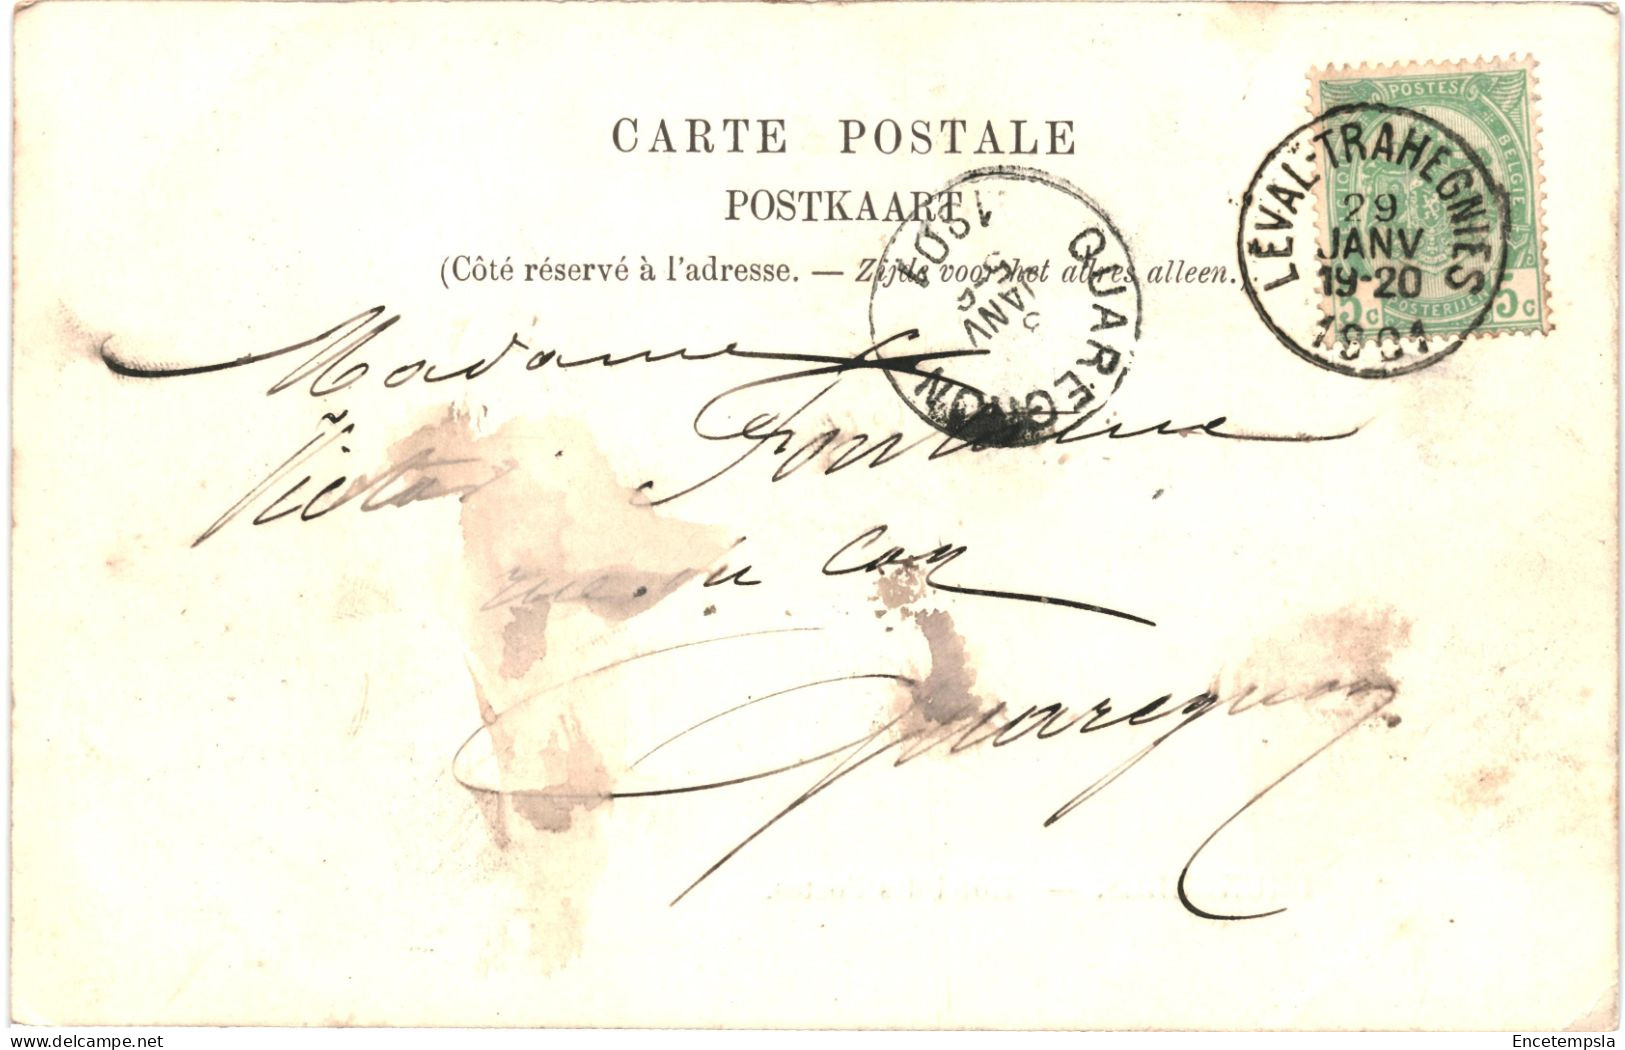 CPA Carte Postale Belgique Bruxelles Hôtel Des Postes 1901  VM79071 - Monumenti, Edifici